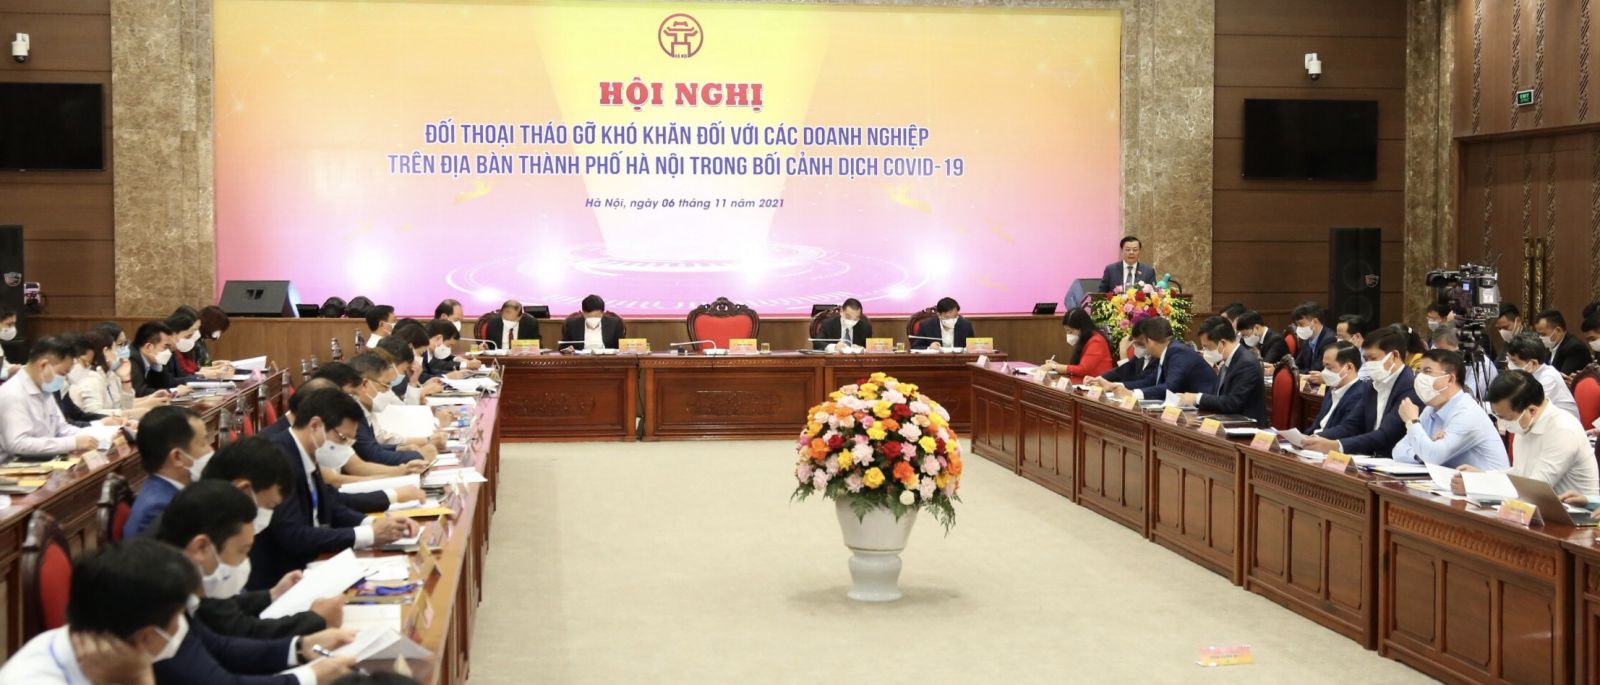 Hội nghị đối thoại, tháo gỡ khó khăn đối với các doanh nghiệp trên địa bàn thành phố Hà Nội trong bối cảnh dịch Covid-19 ngày 6/11.